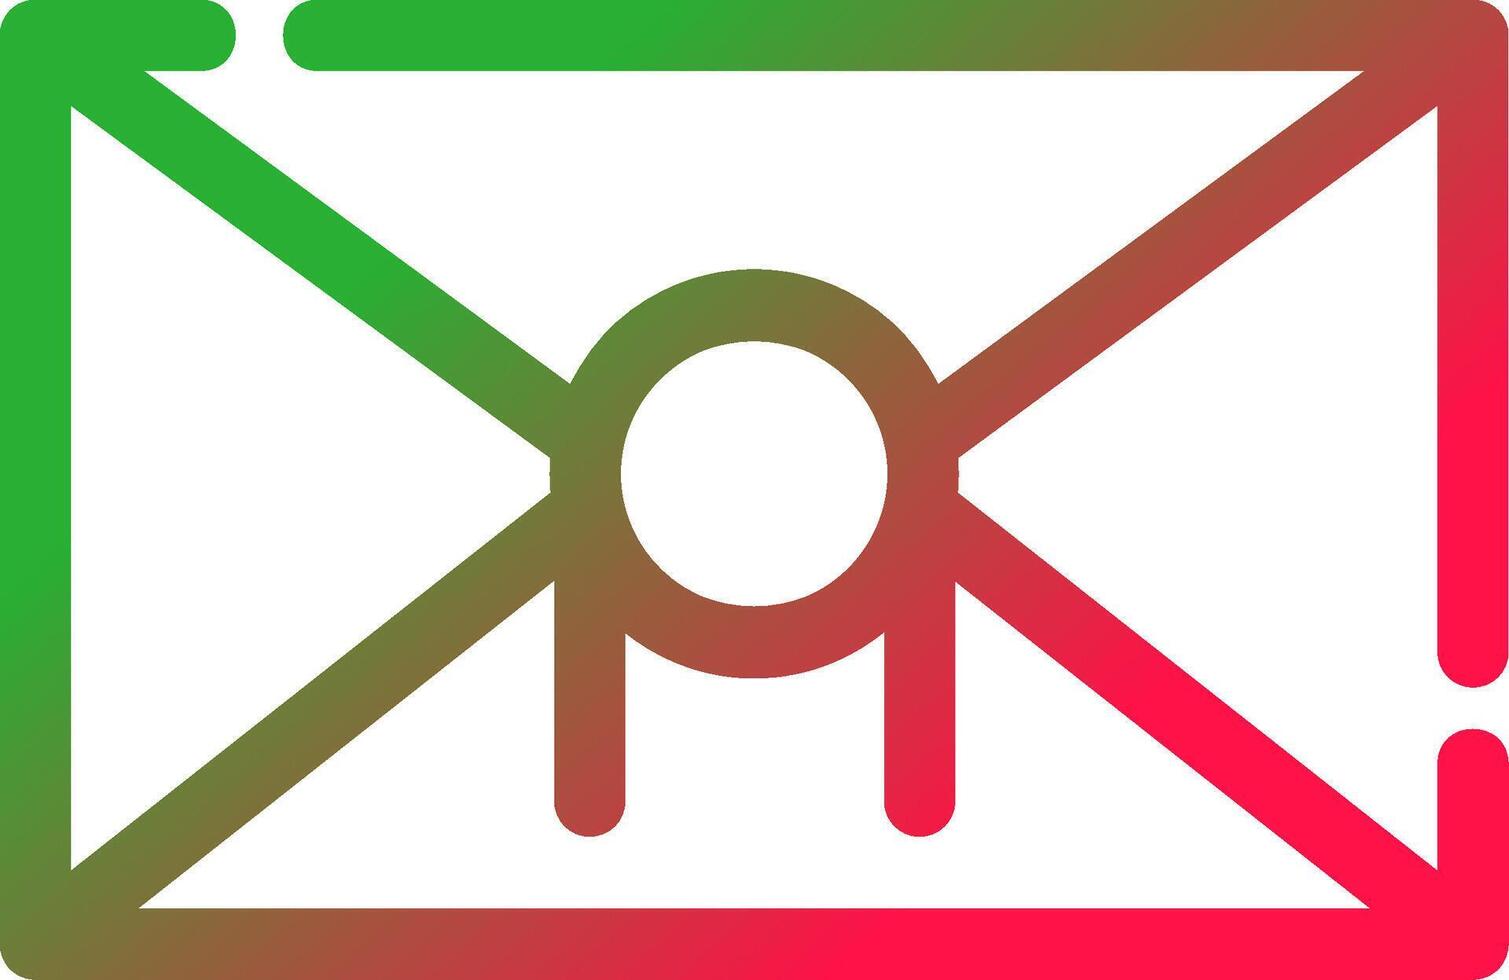 Letter Creative Icon Design vector